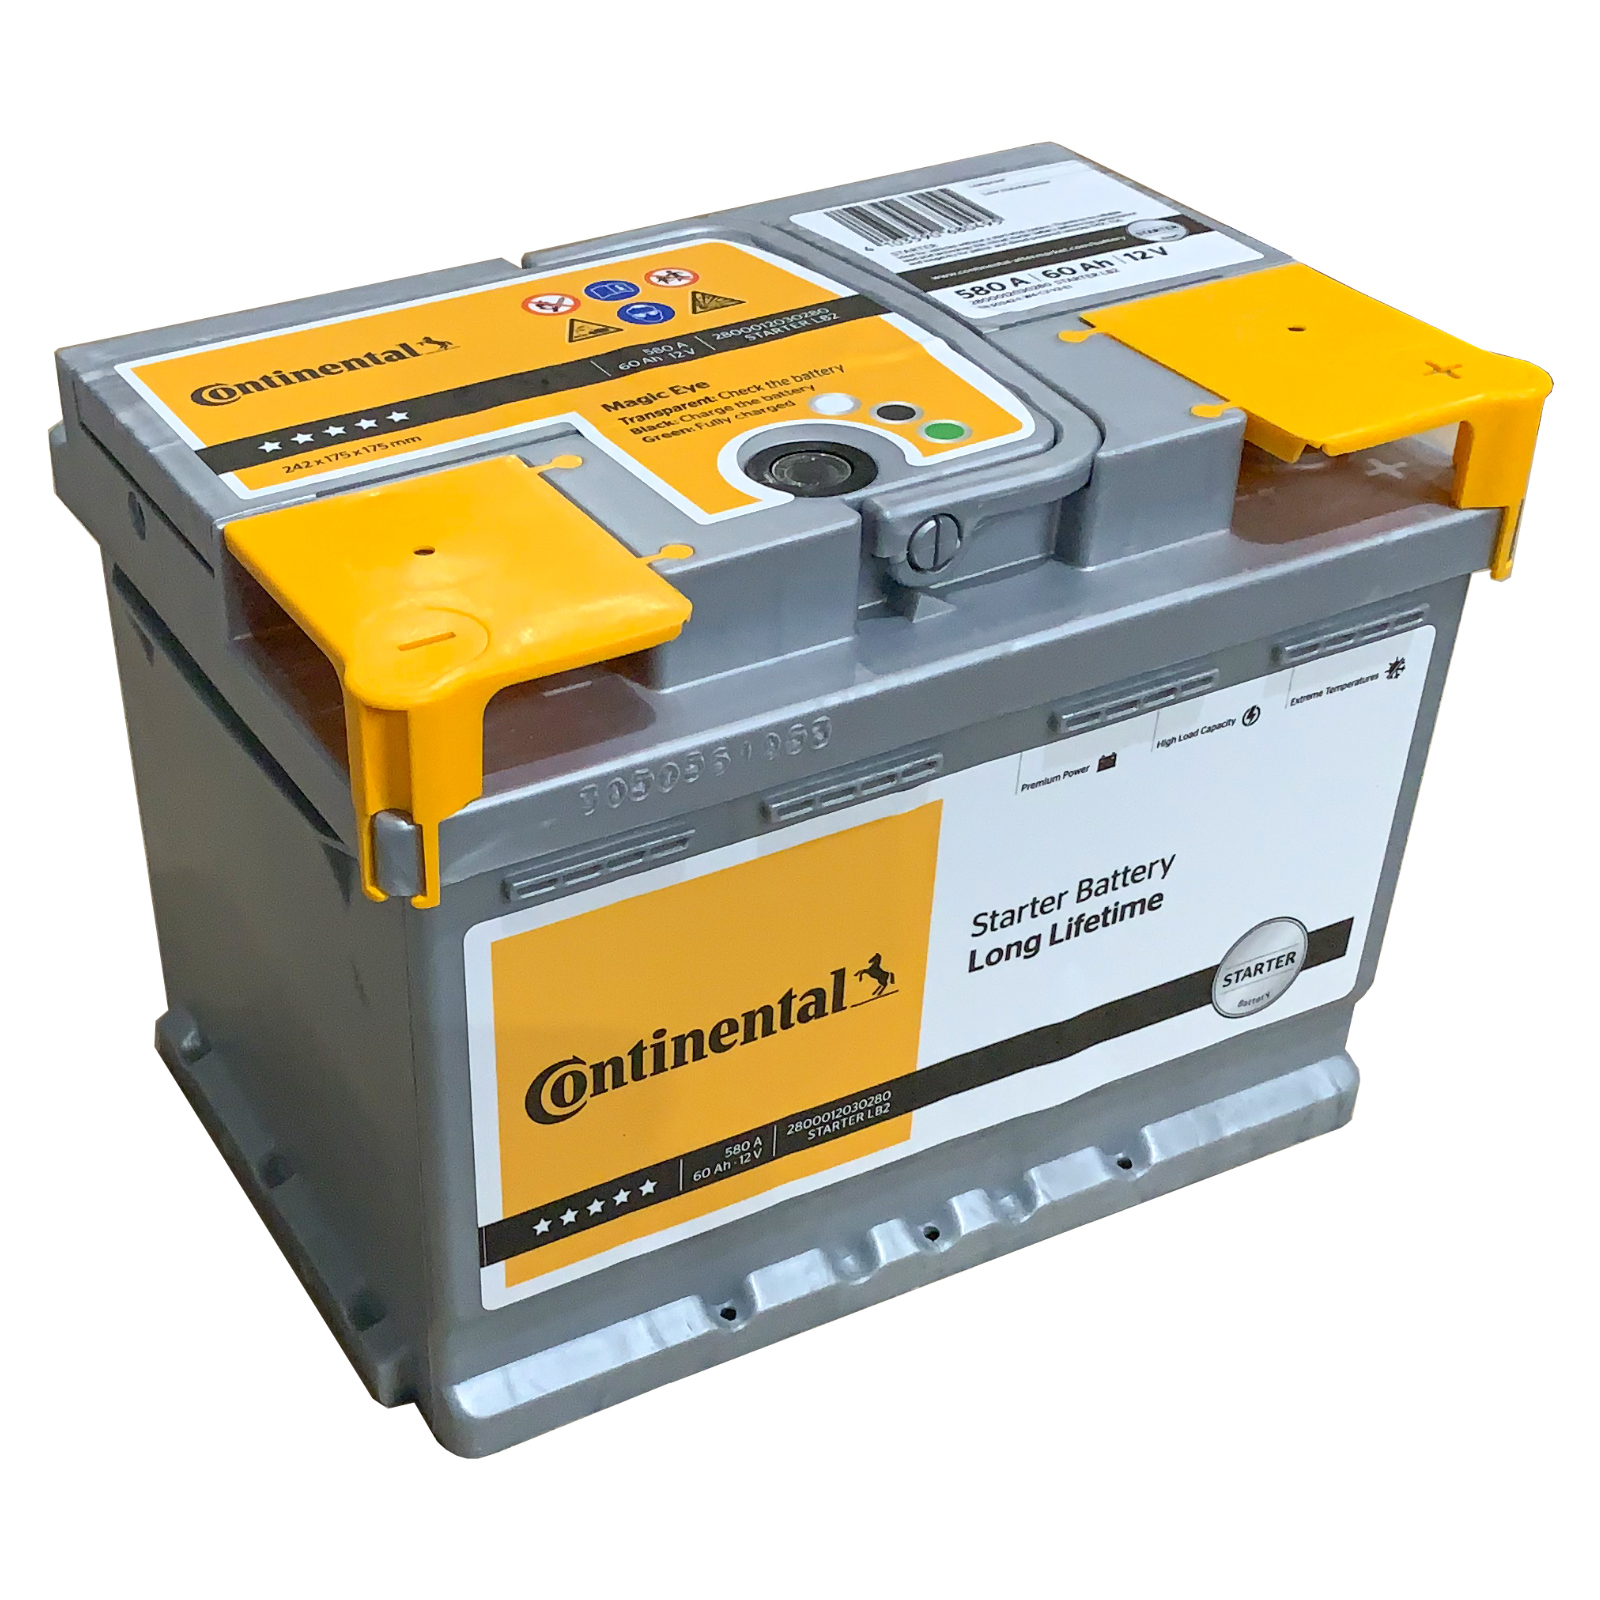 Continental Starter Batterie 2800012020280 12V, 580A, 60Ah